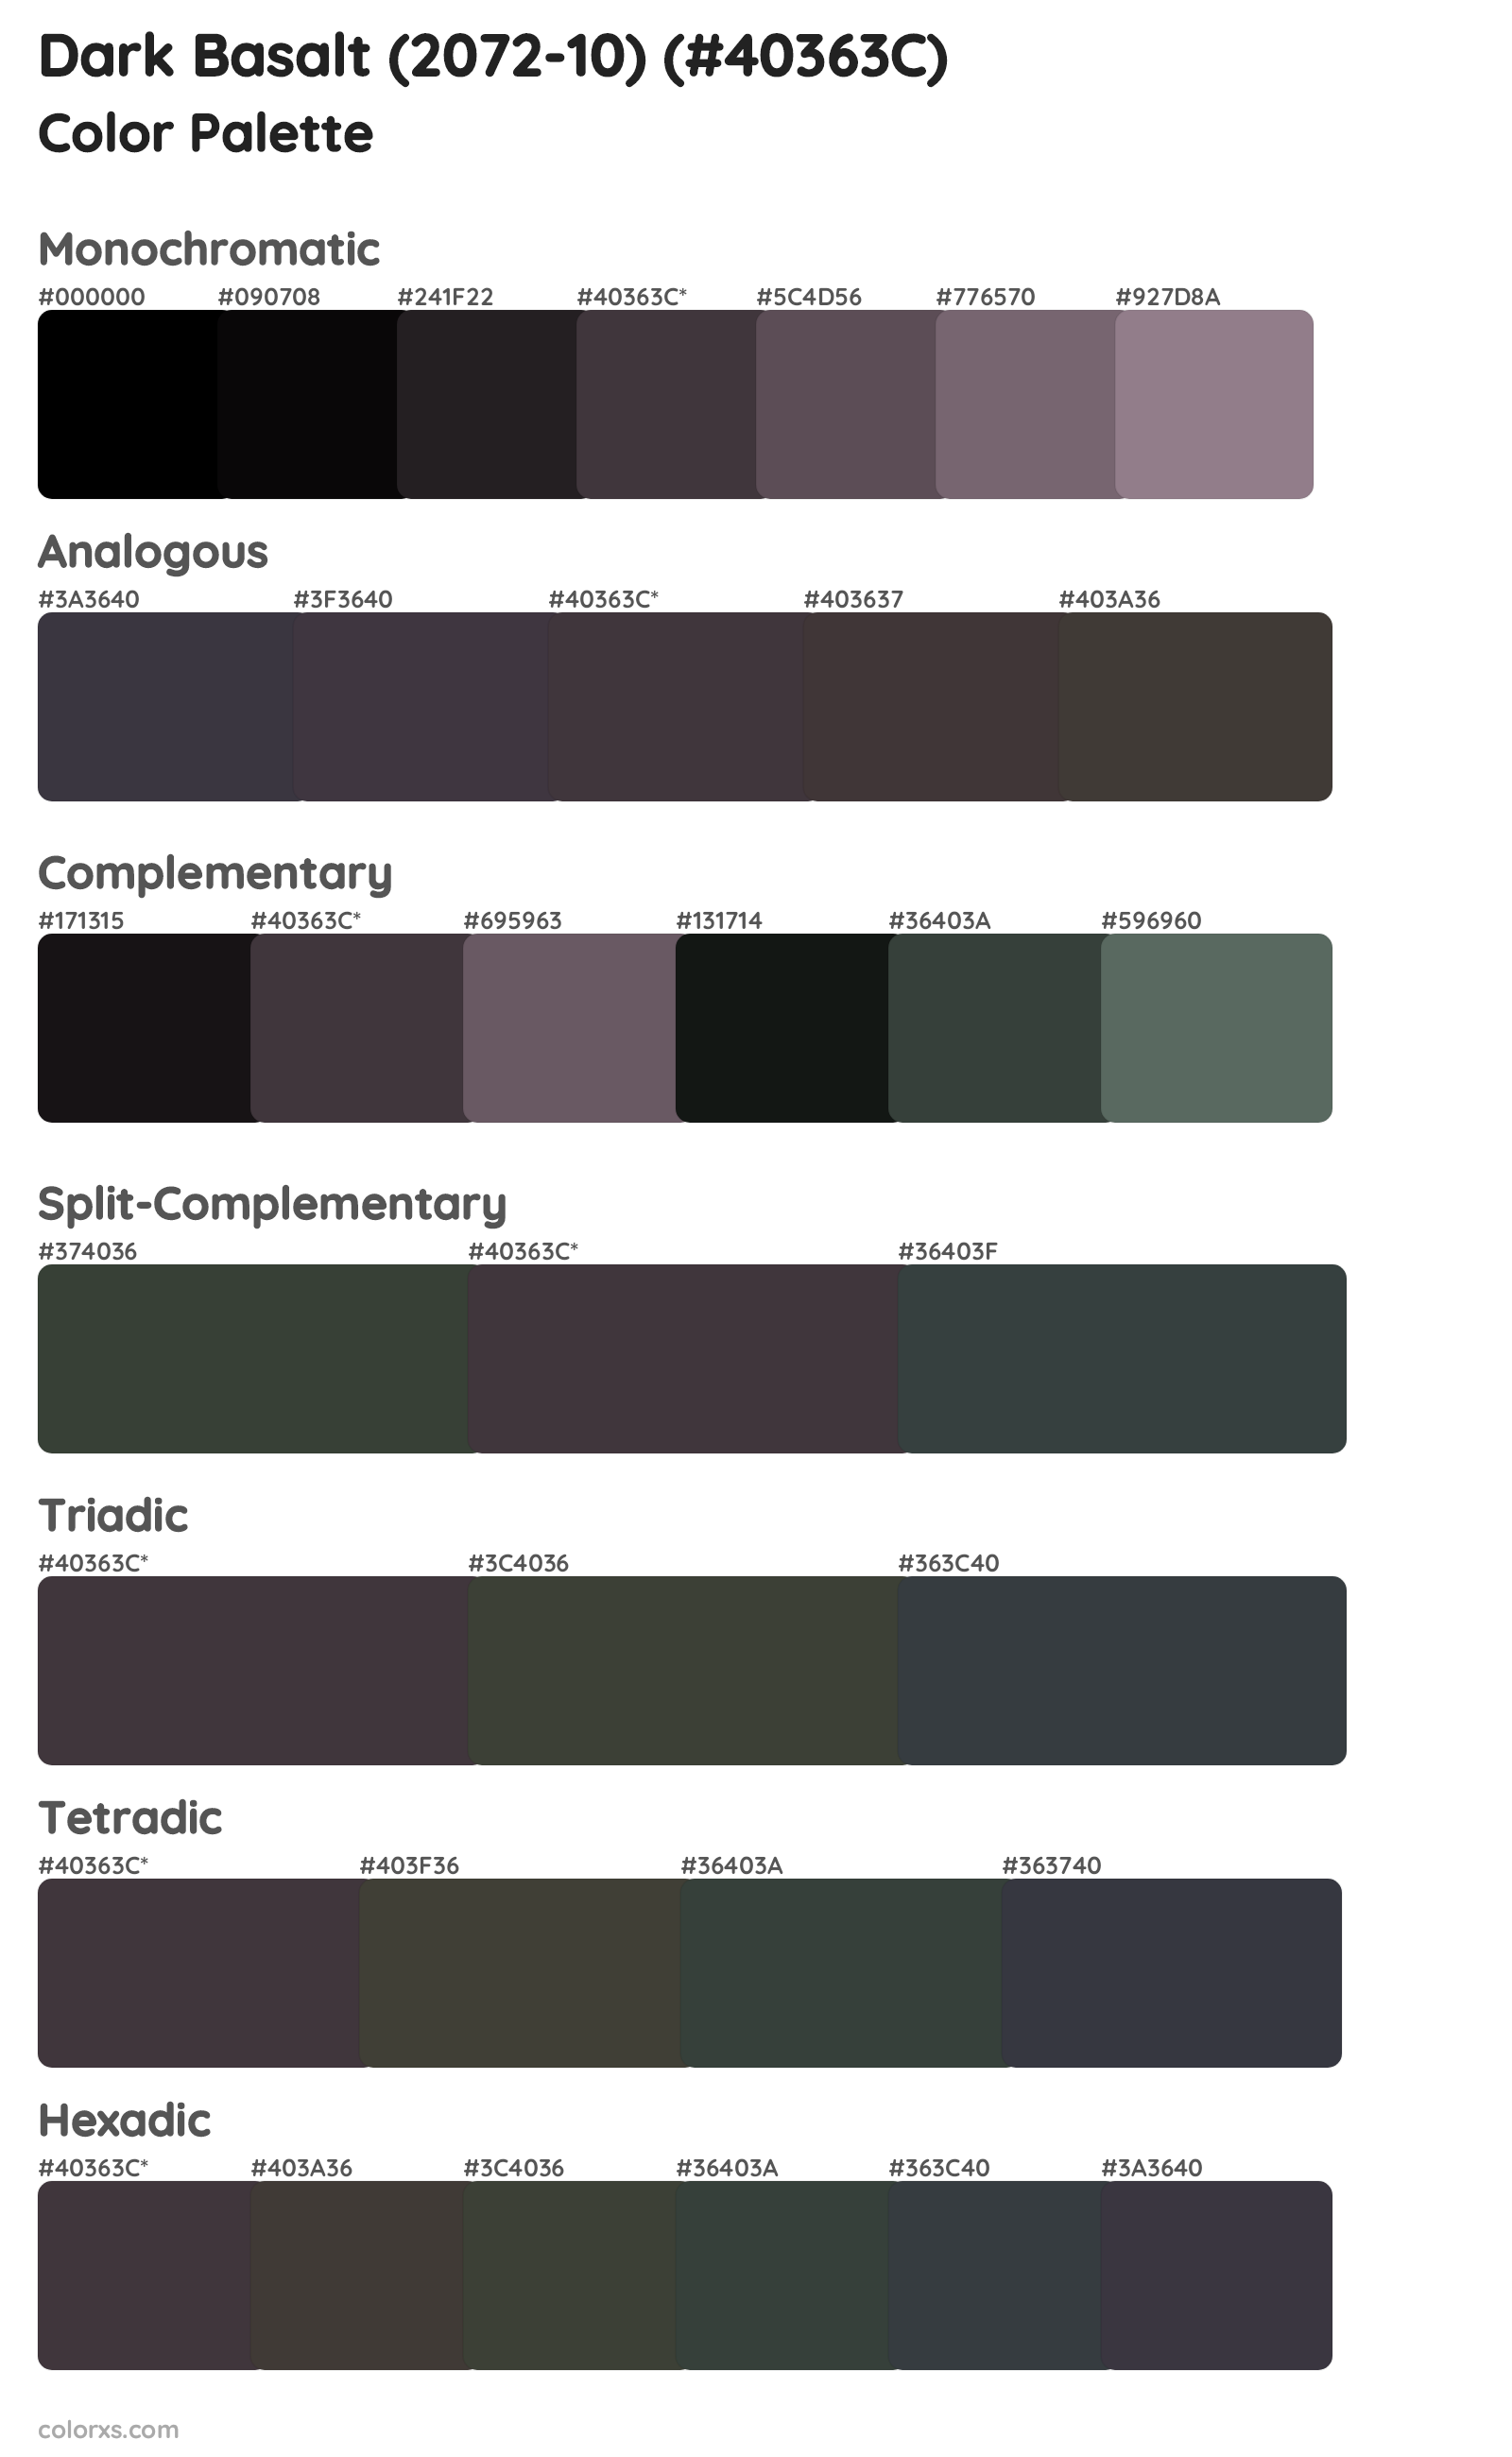 Dark Basalt (2072-10) Color Scheme Palettes